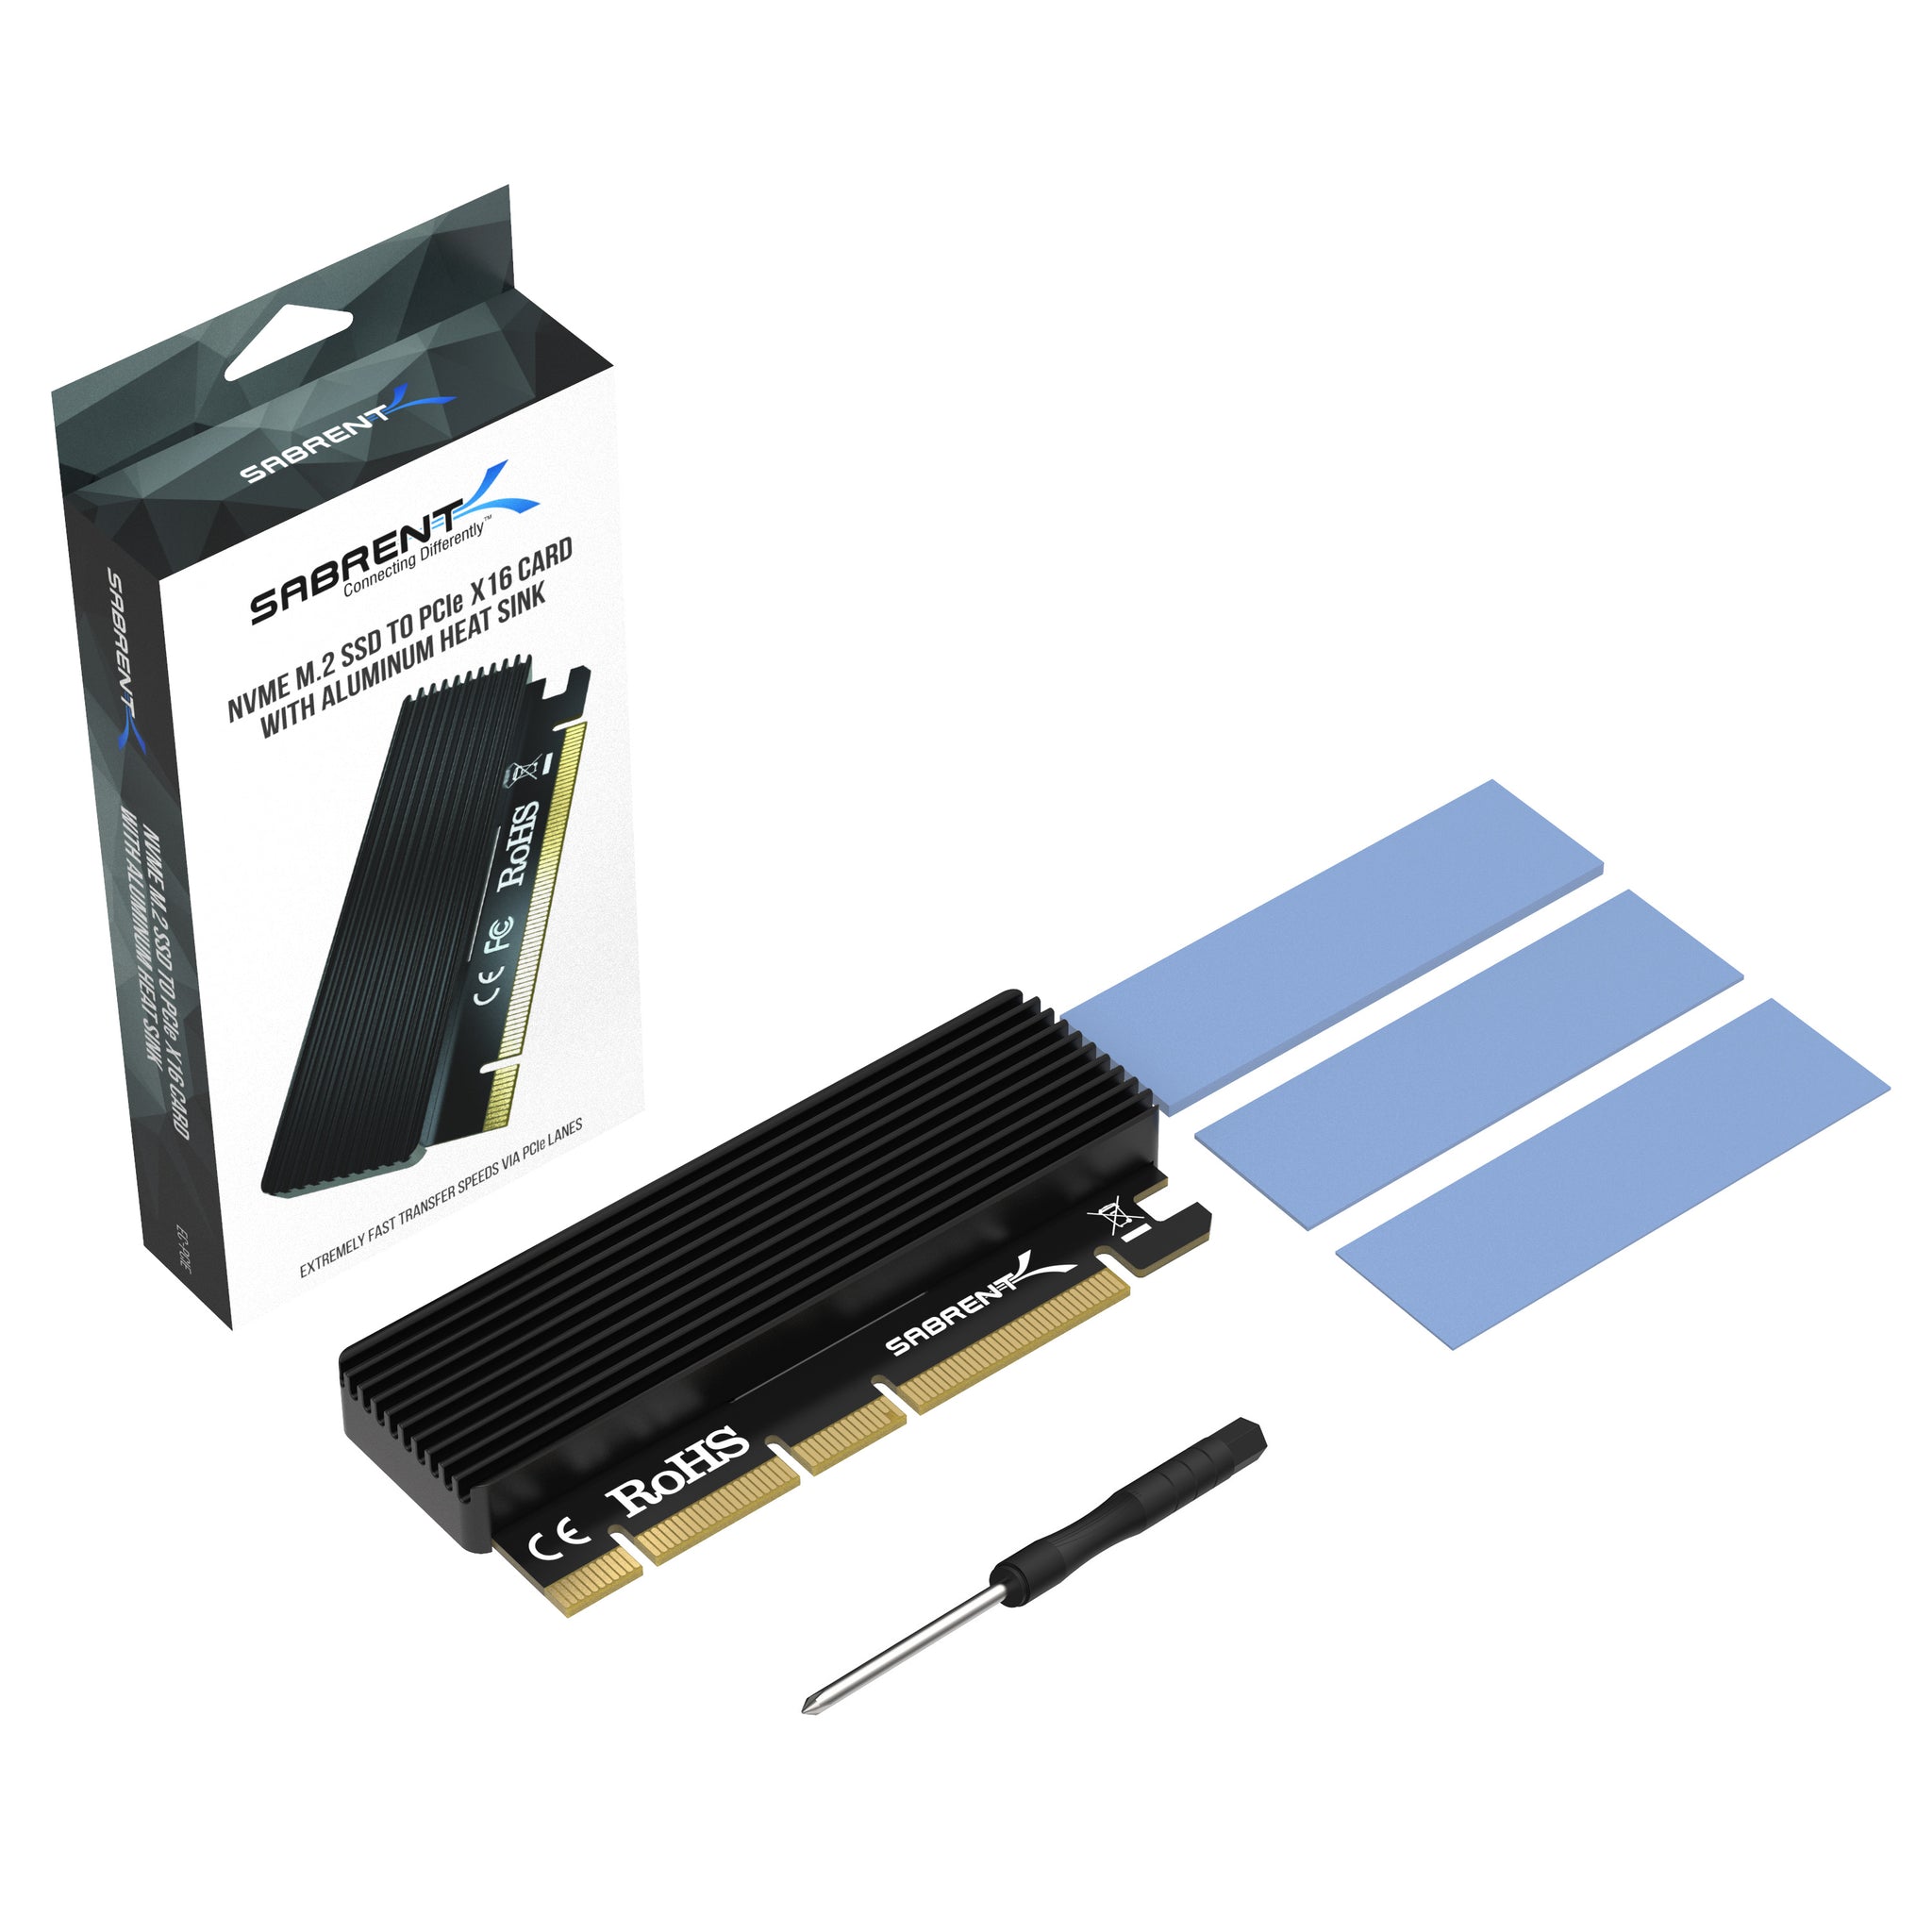 Skære af I forhold Træts webspindel NVMe M.2 SSD to PCIe X16/X8/X4 Card - Sabrent